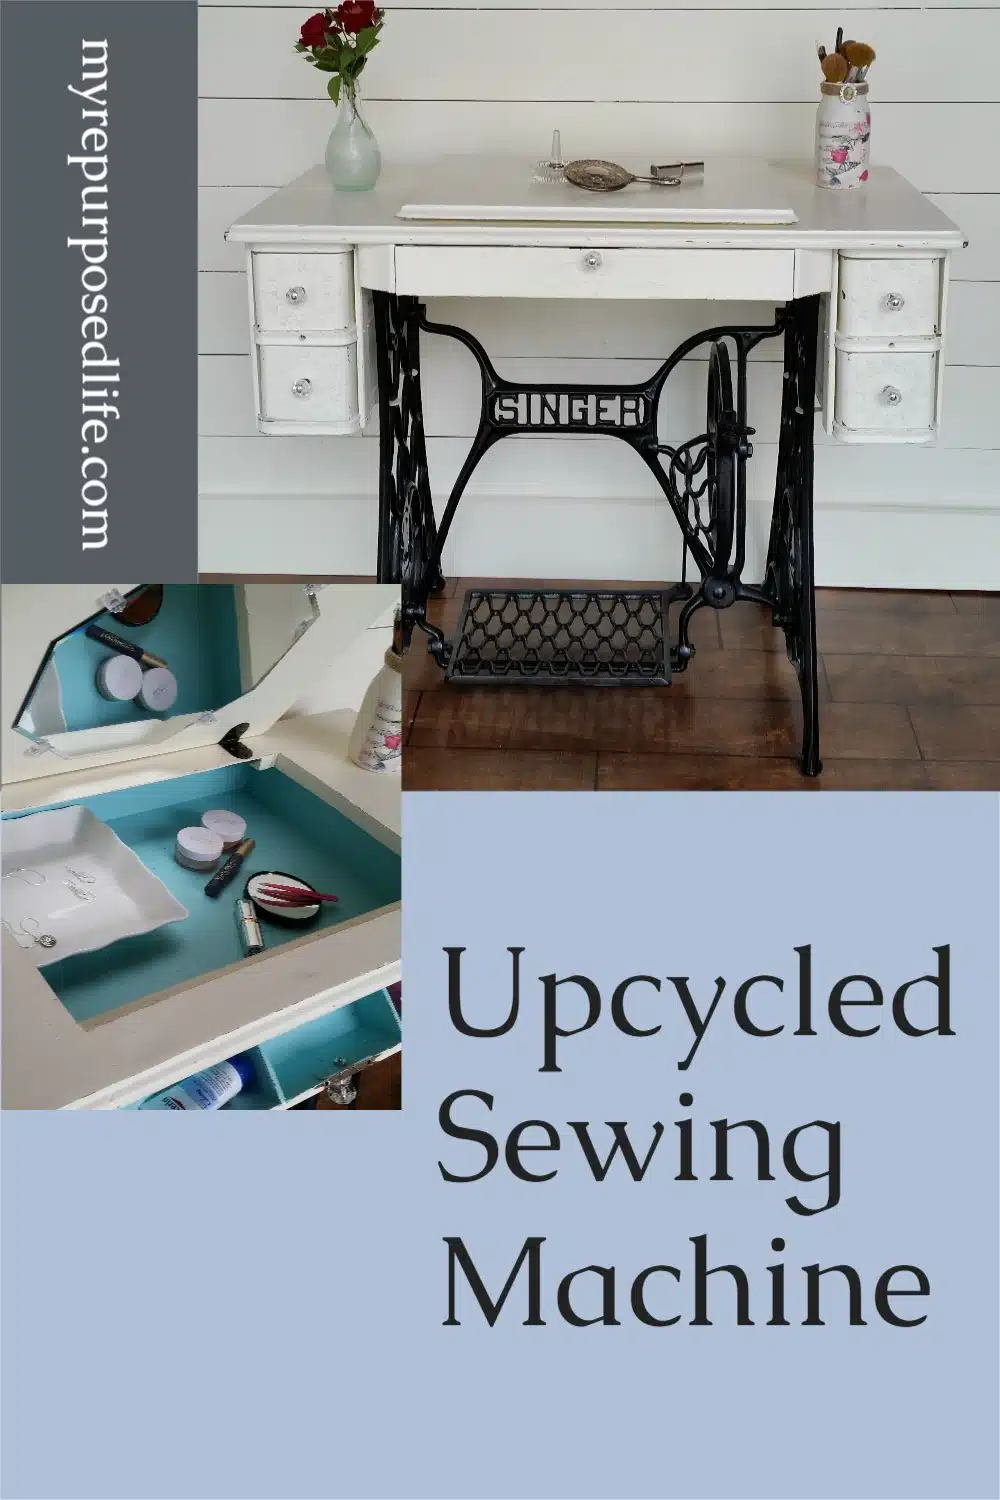 Singer Sewing Machine-MyRepurposed Life